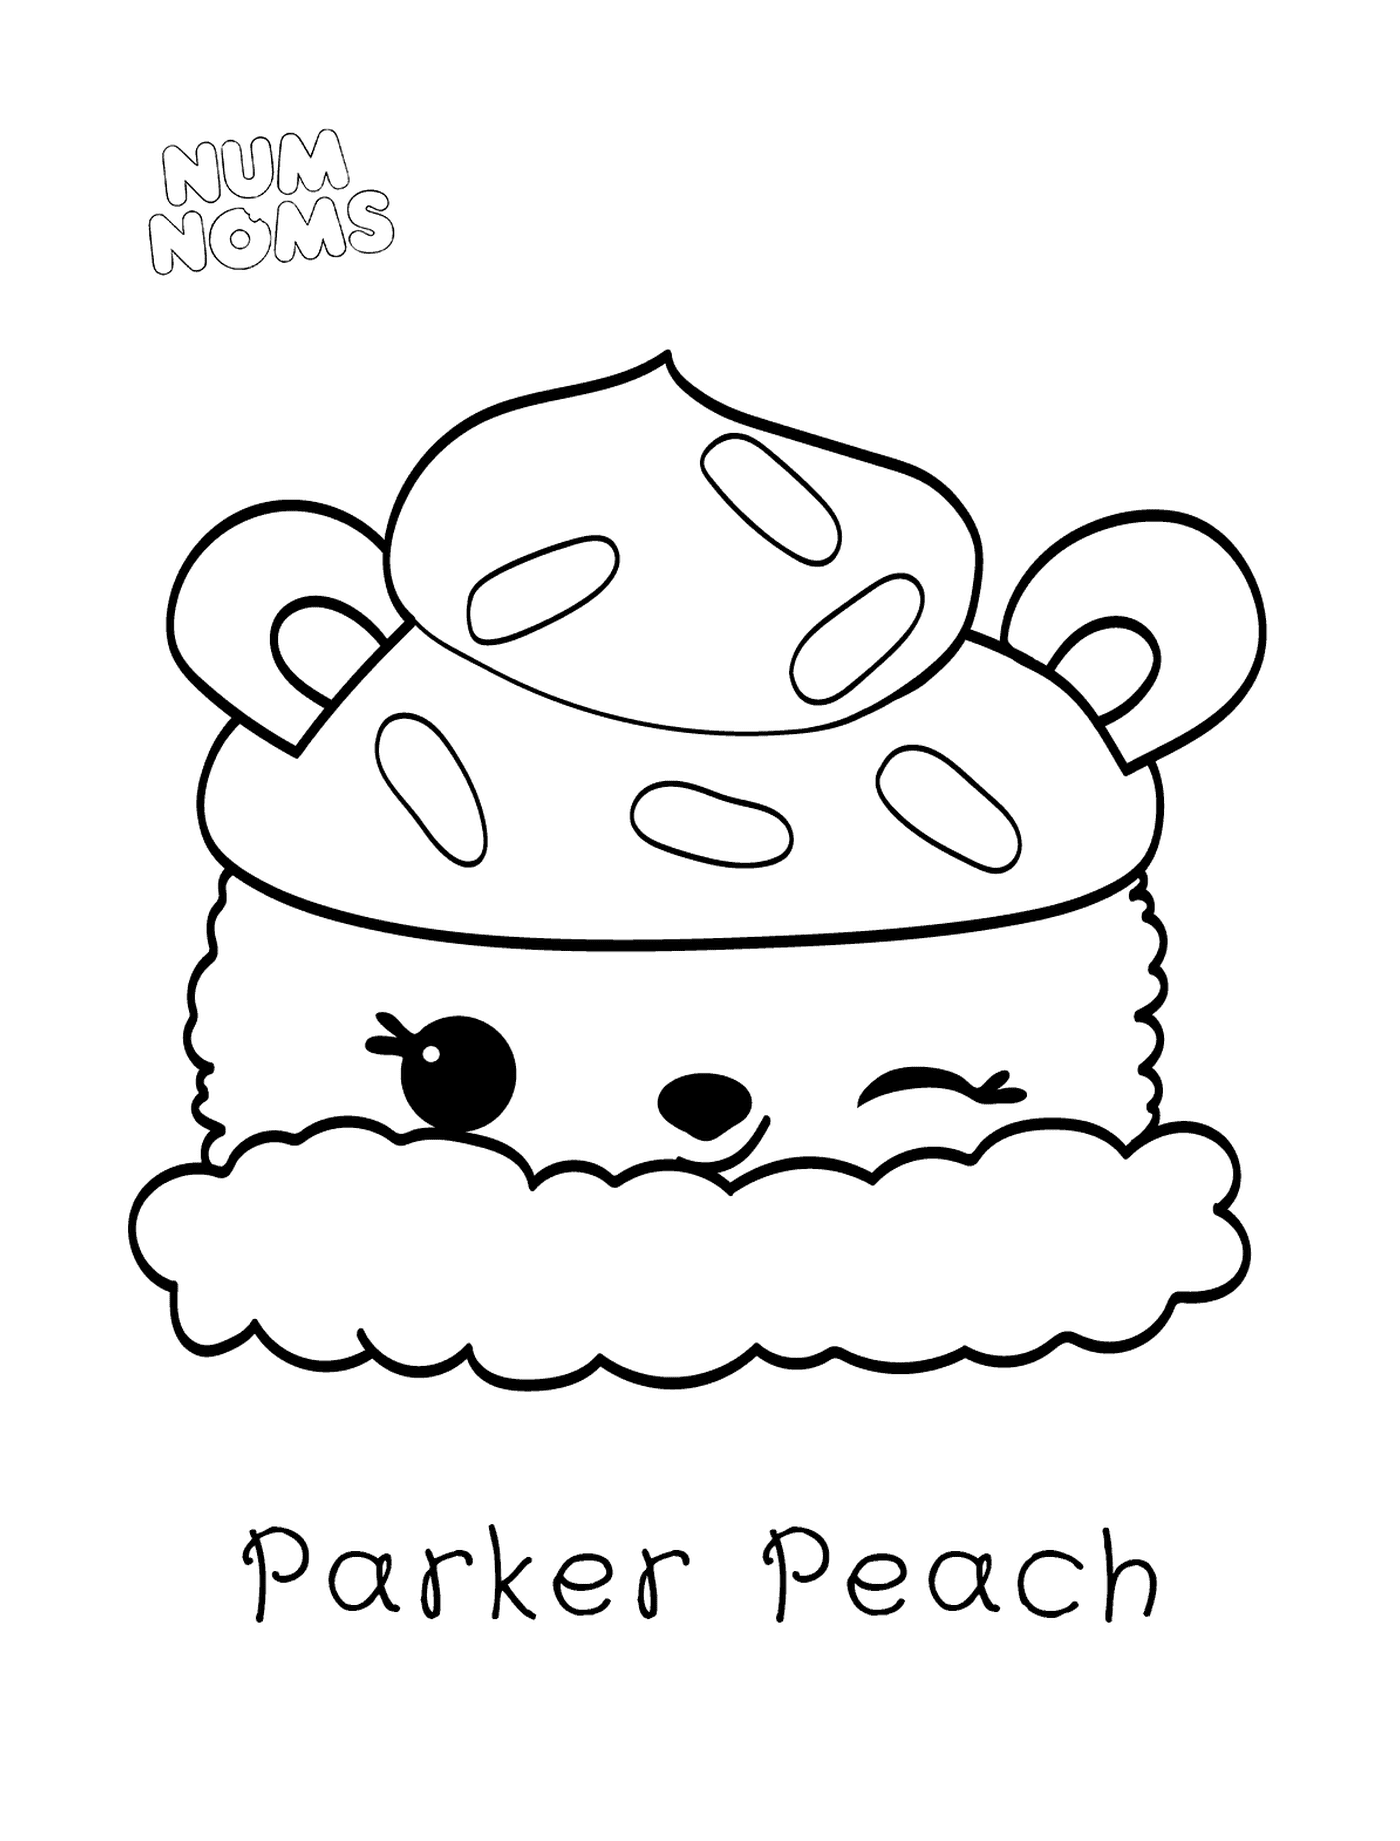  Parker Peach por Nombres Núm 